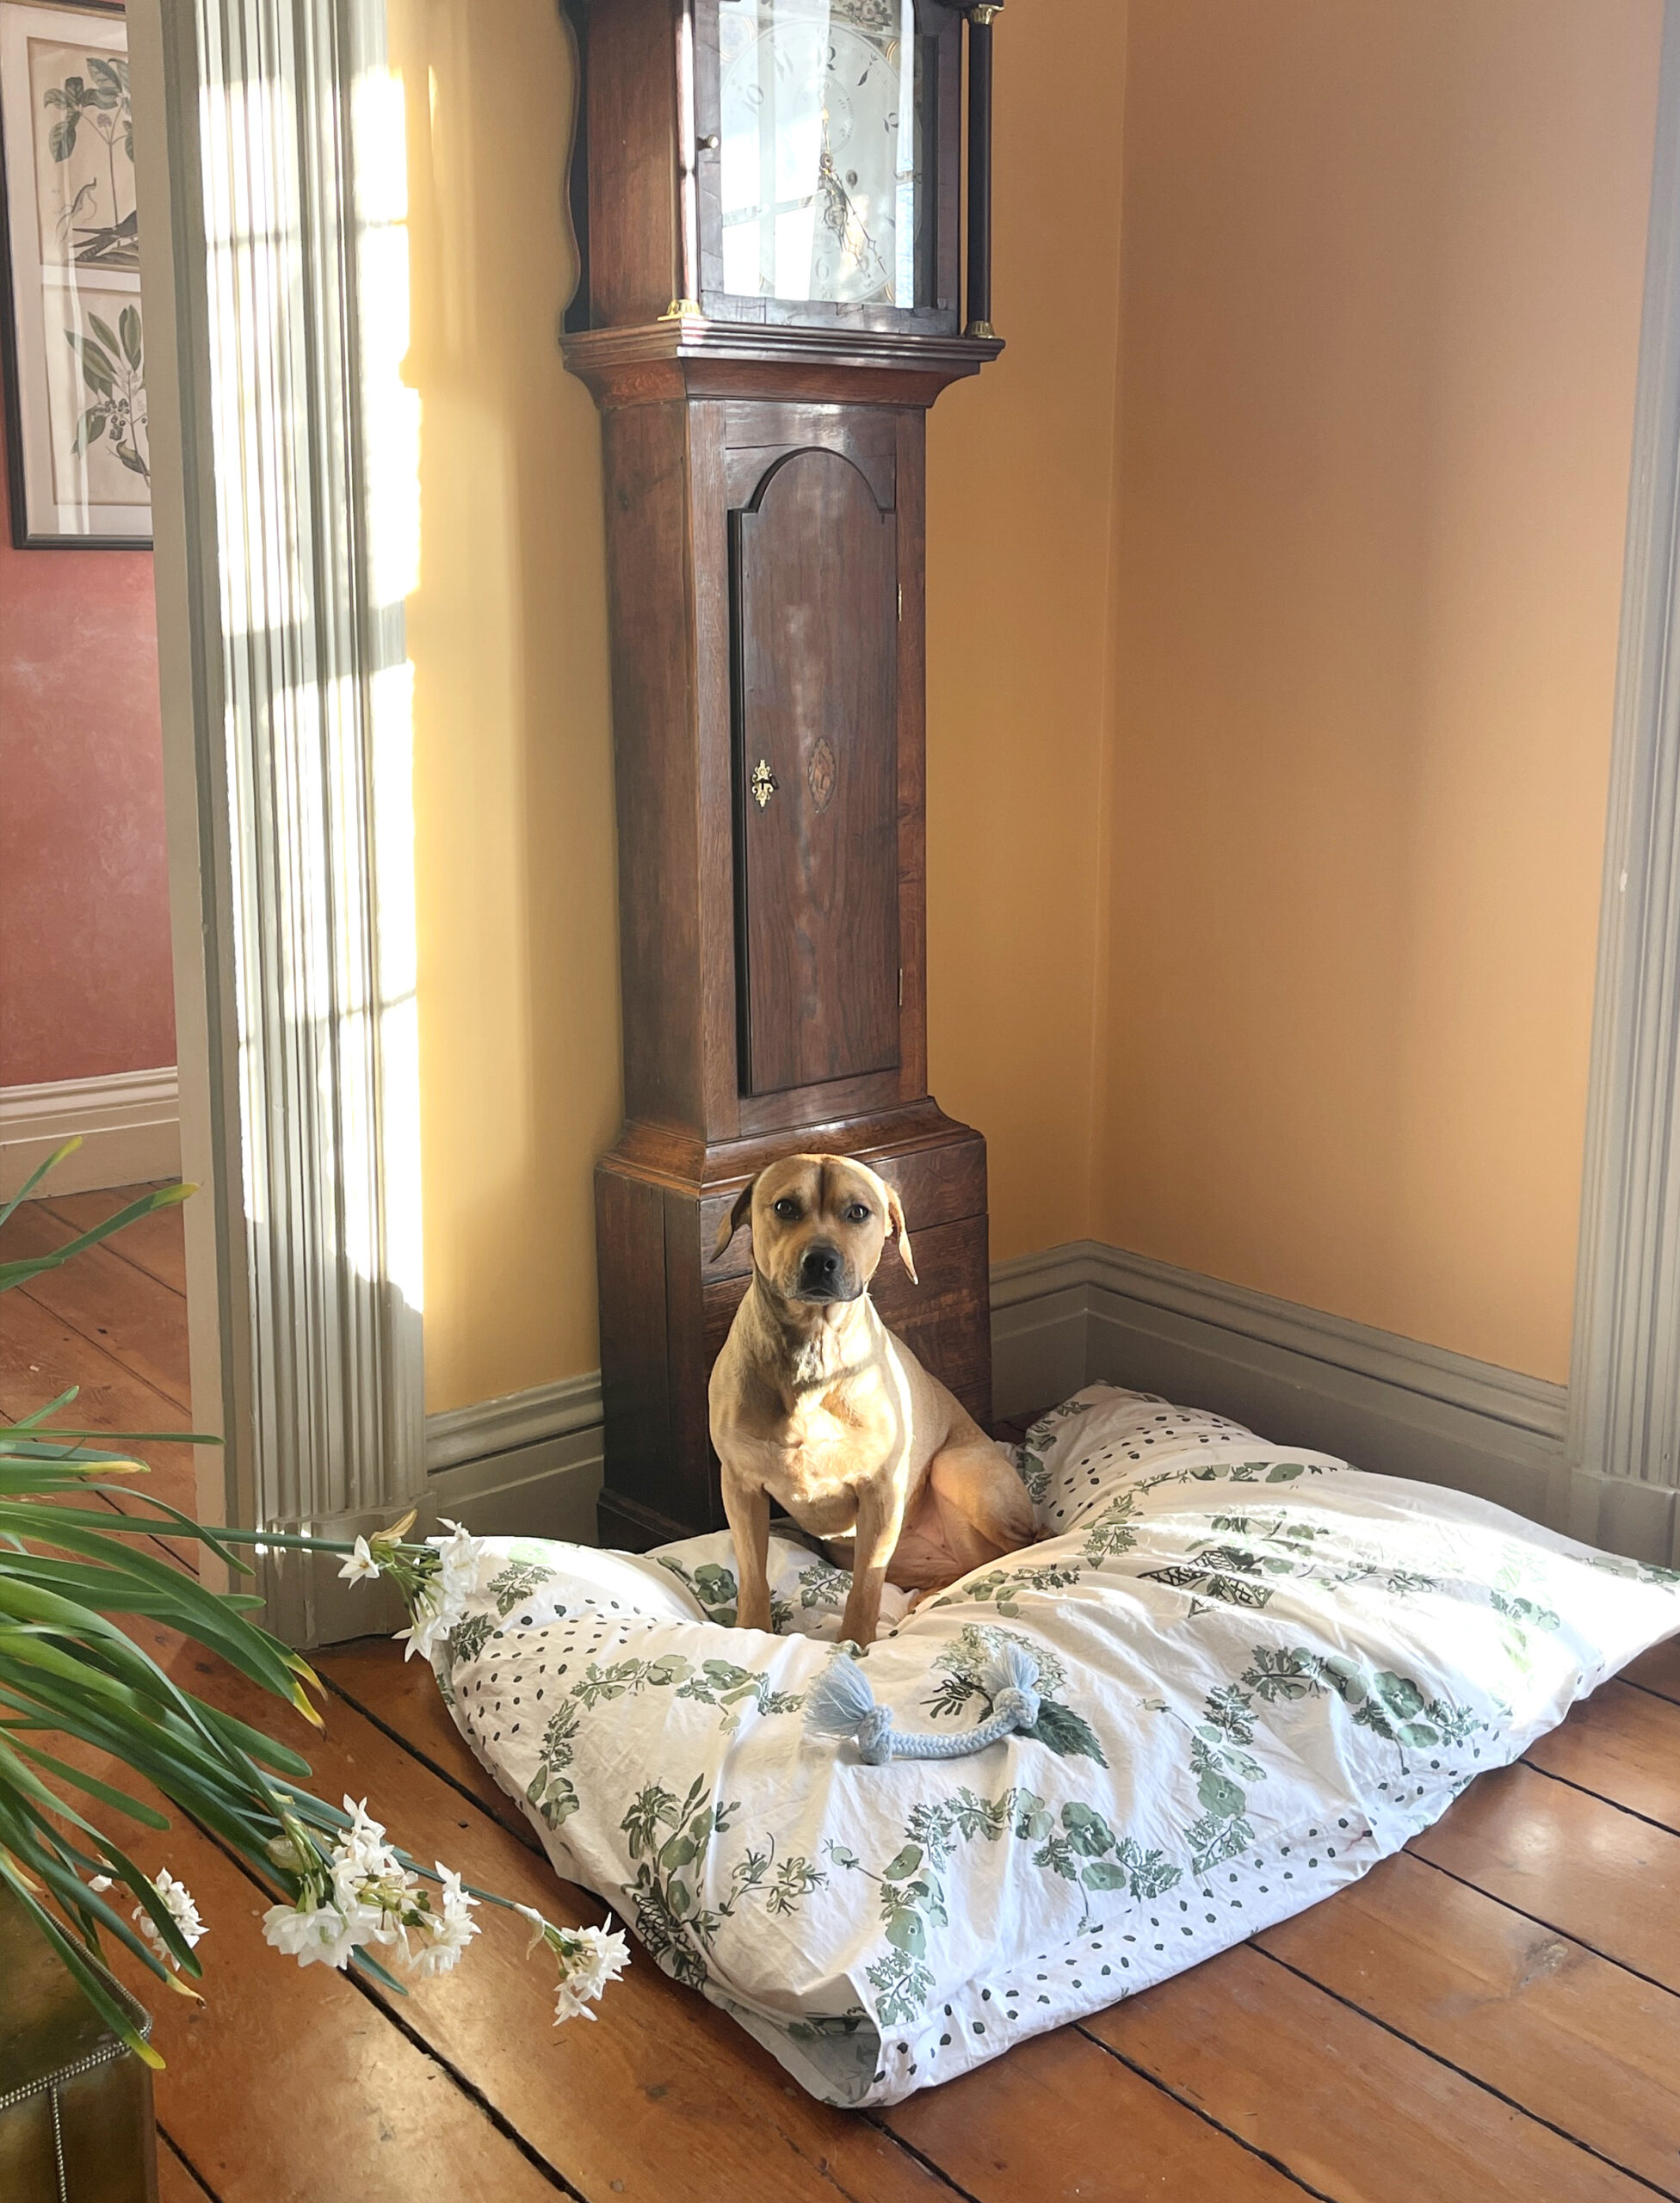 Agatha a brown dog sitting on a chintz dog bed near a grandfather clock